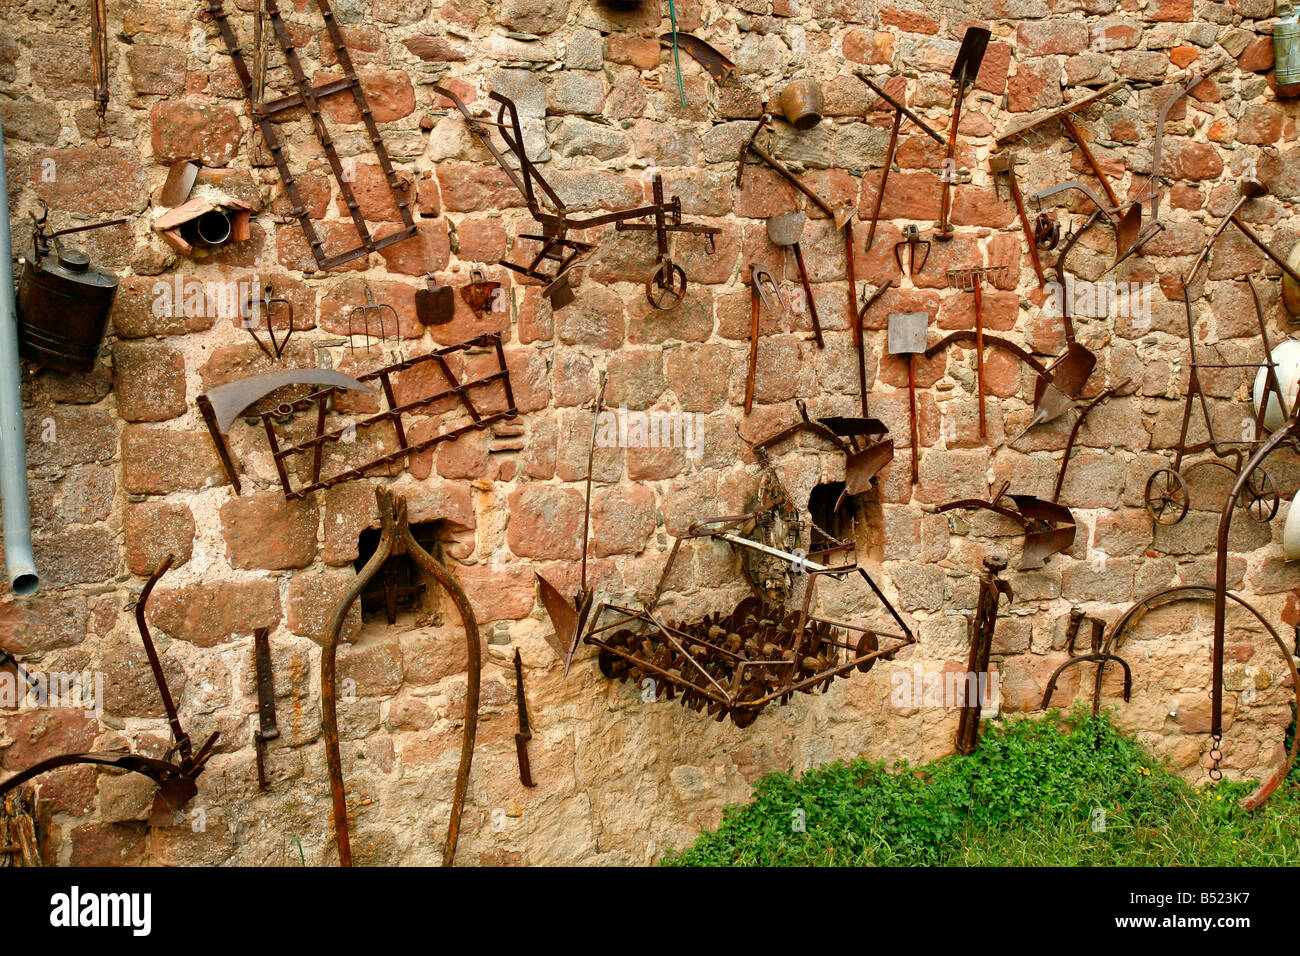 Outils rural antique dans une antique mur d'une maison. Prades (Barcelona) Catalogne Espagne Banque D'Images